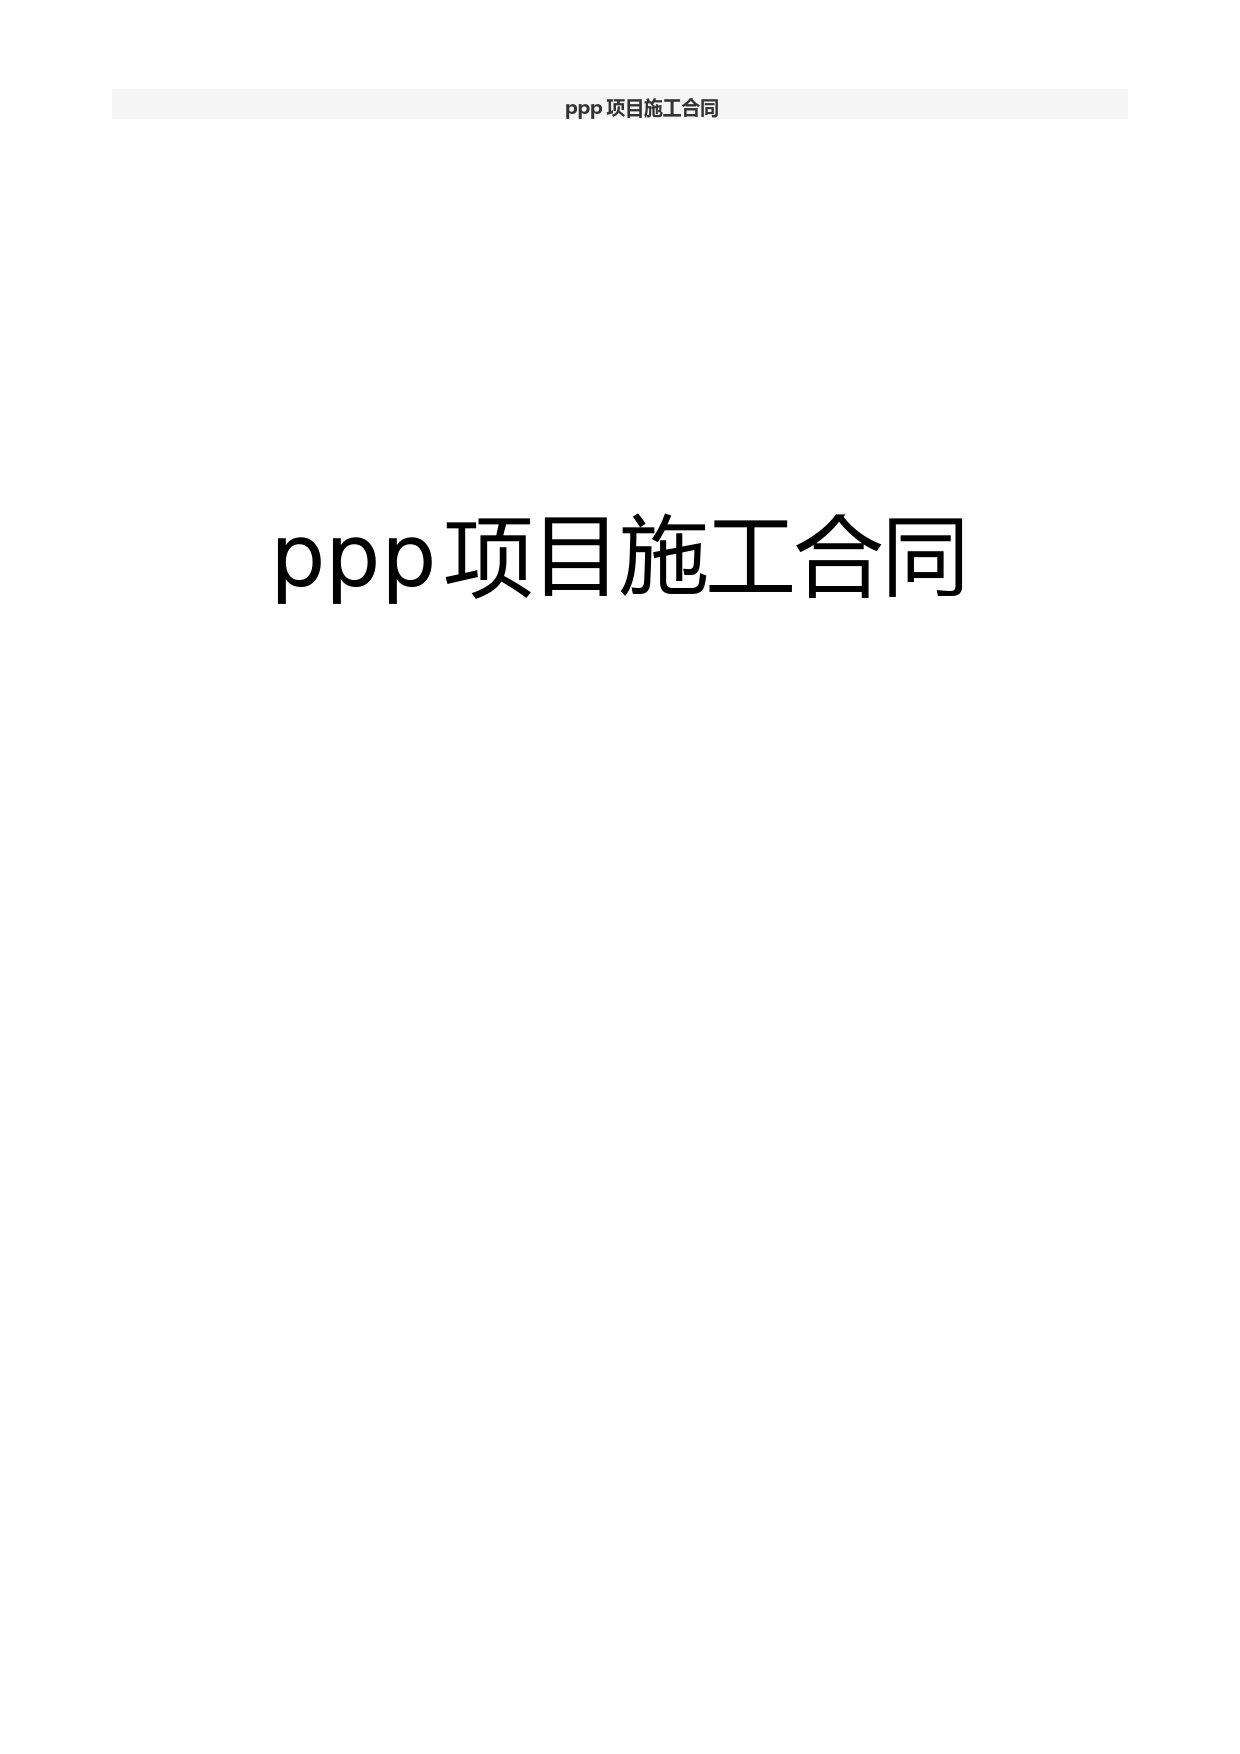 ppp项目施工合同